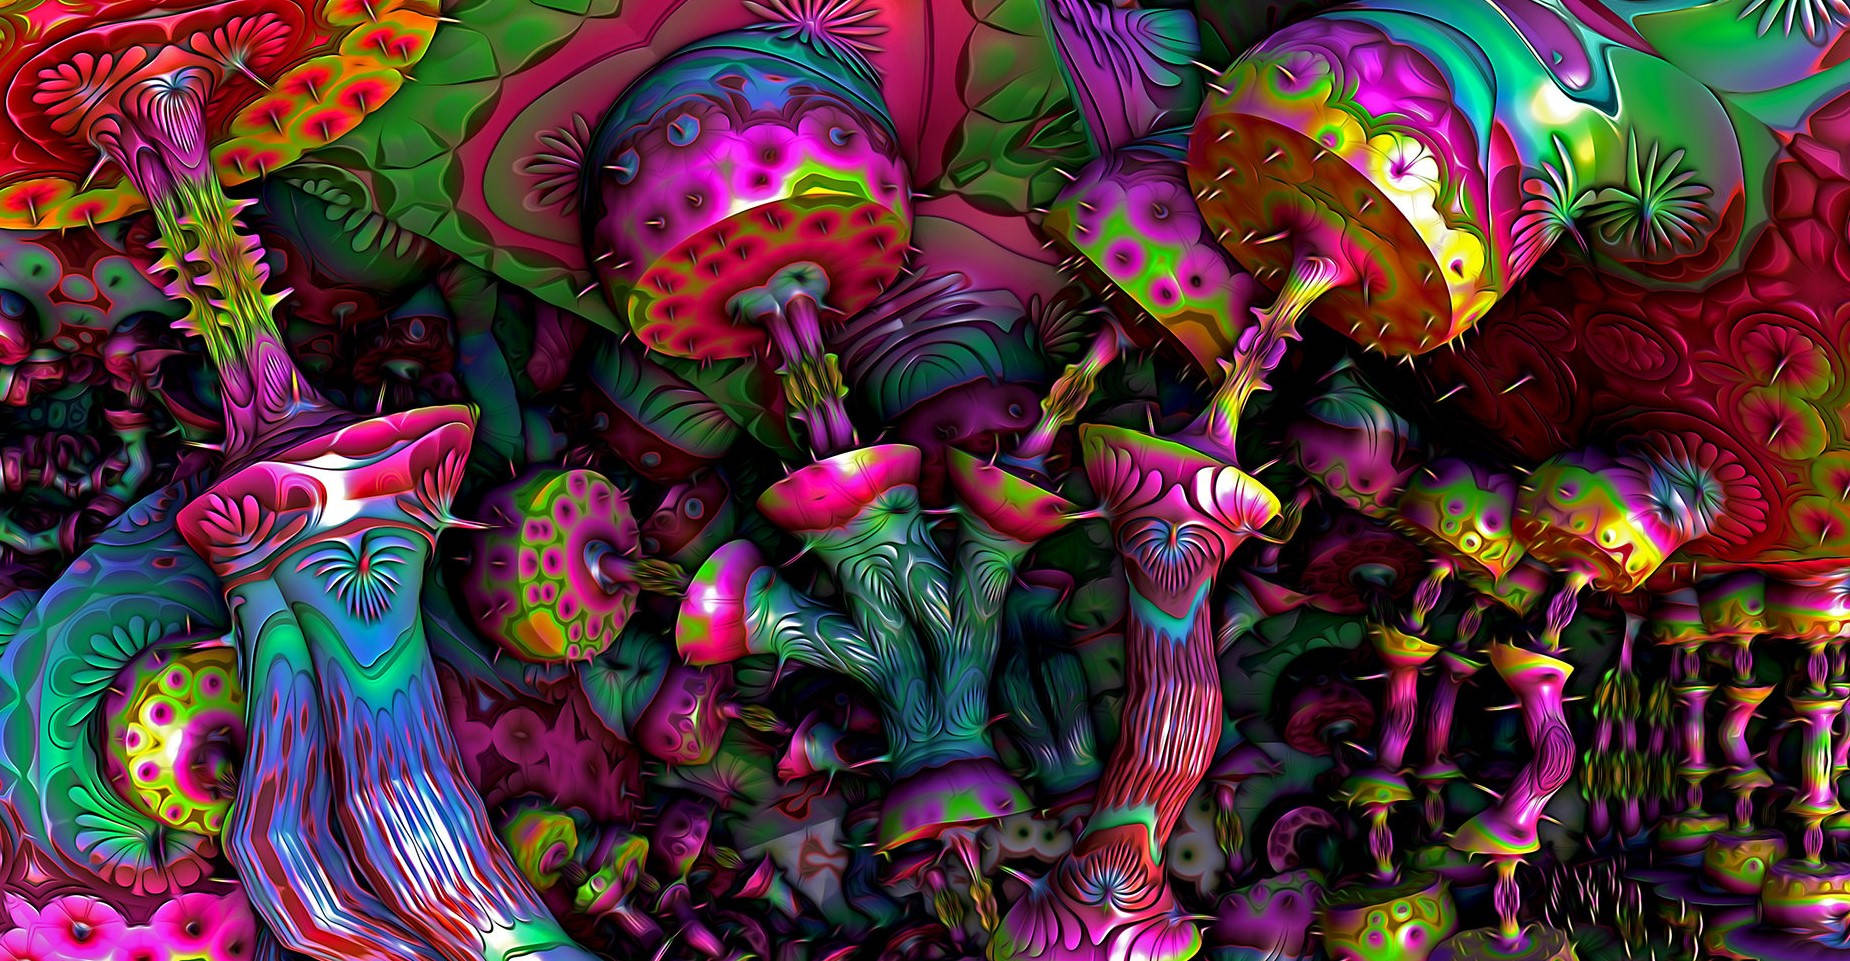 Einpsychedelischer Fliegenpilz-hintergrund Wallpaper